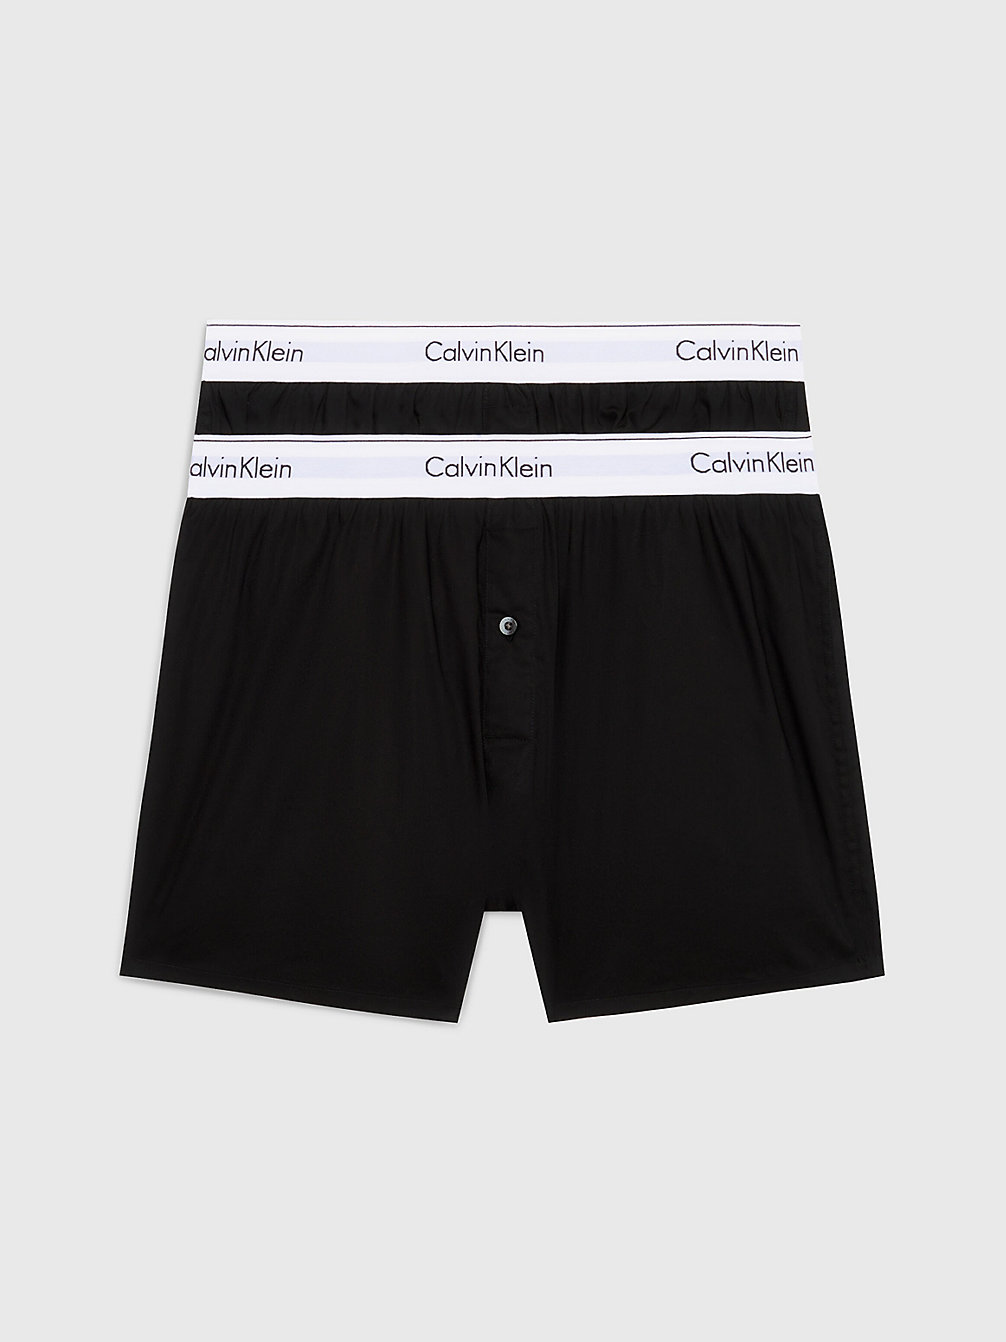 BLACK / BLACK > 2er-Pack Slim Fit Boxershorts - Modern Cotton > undefined men - Calvin Klein